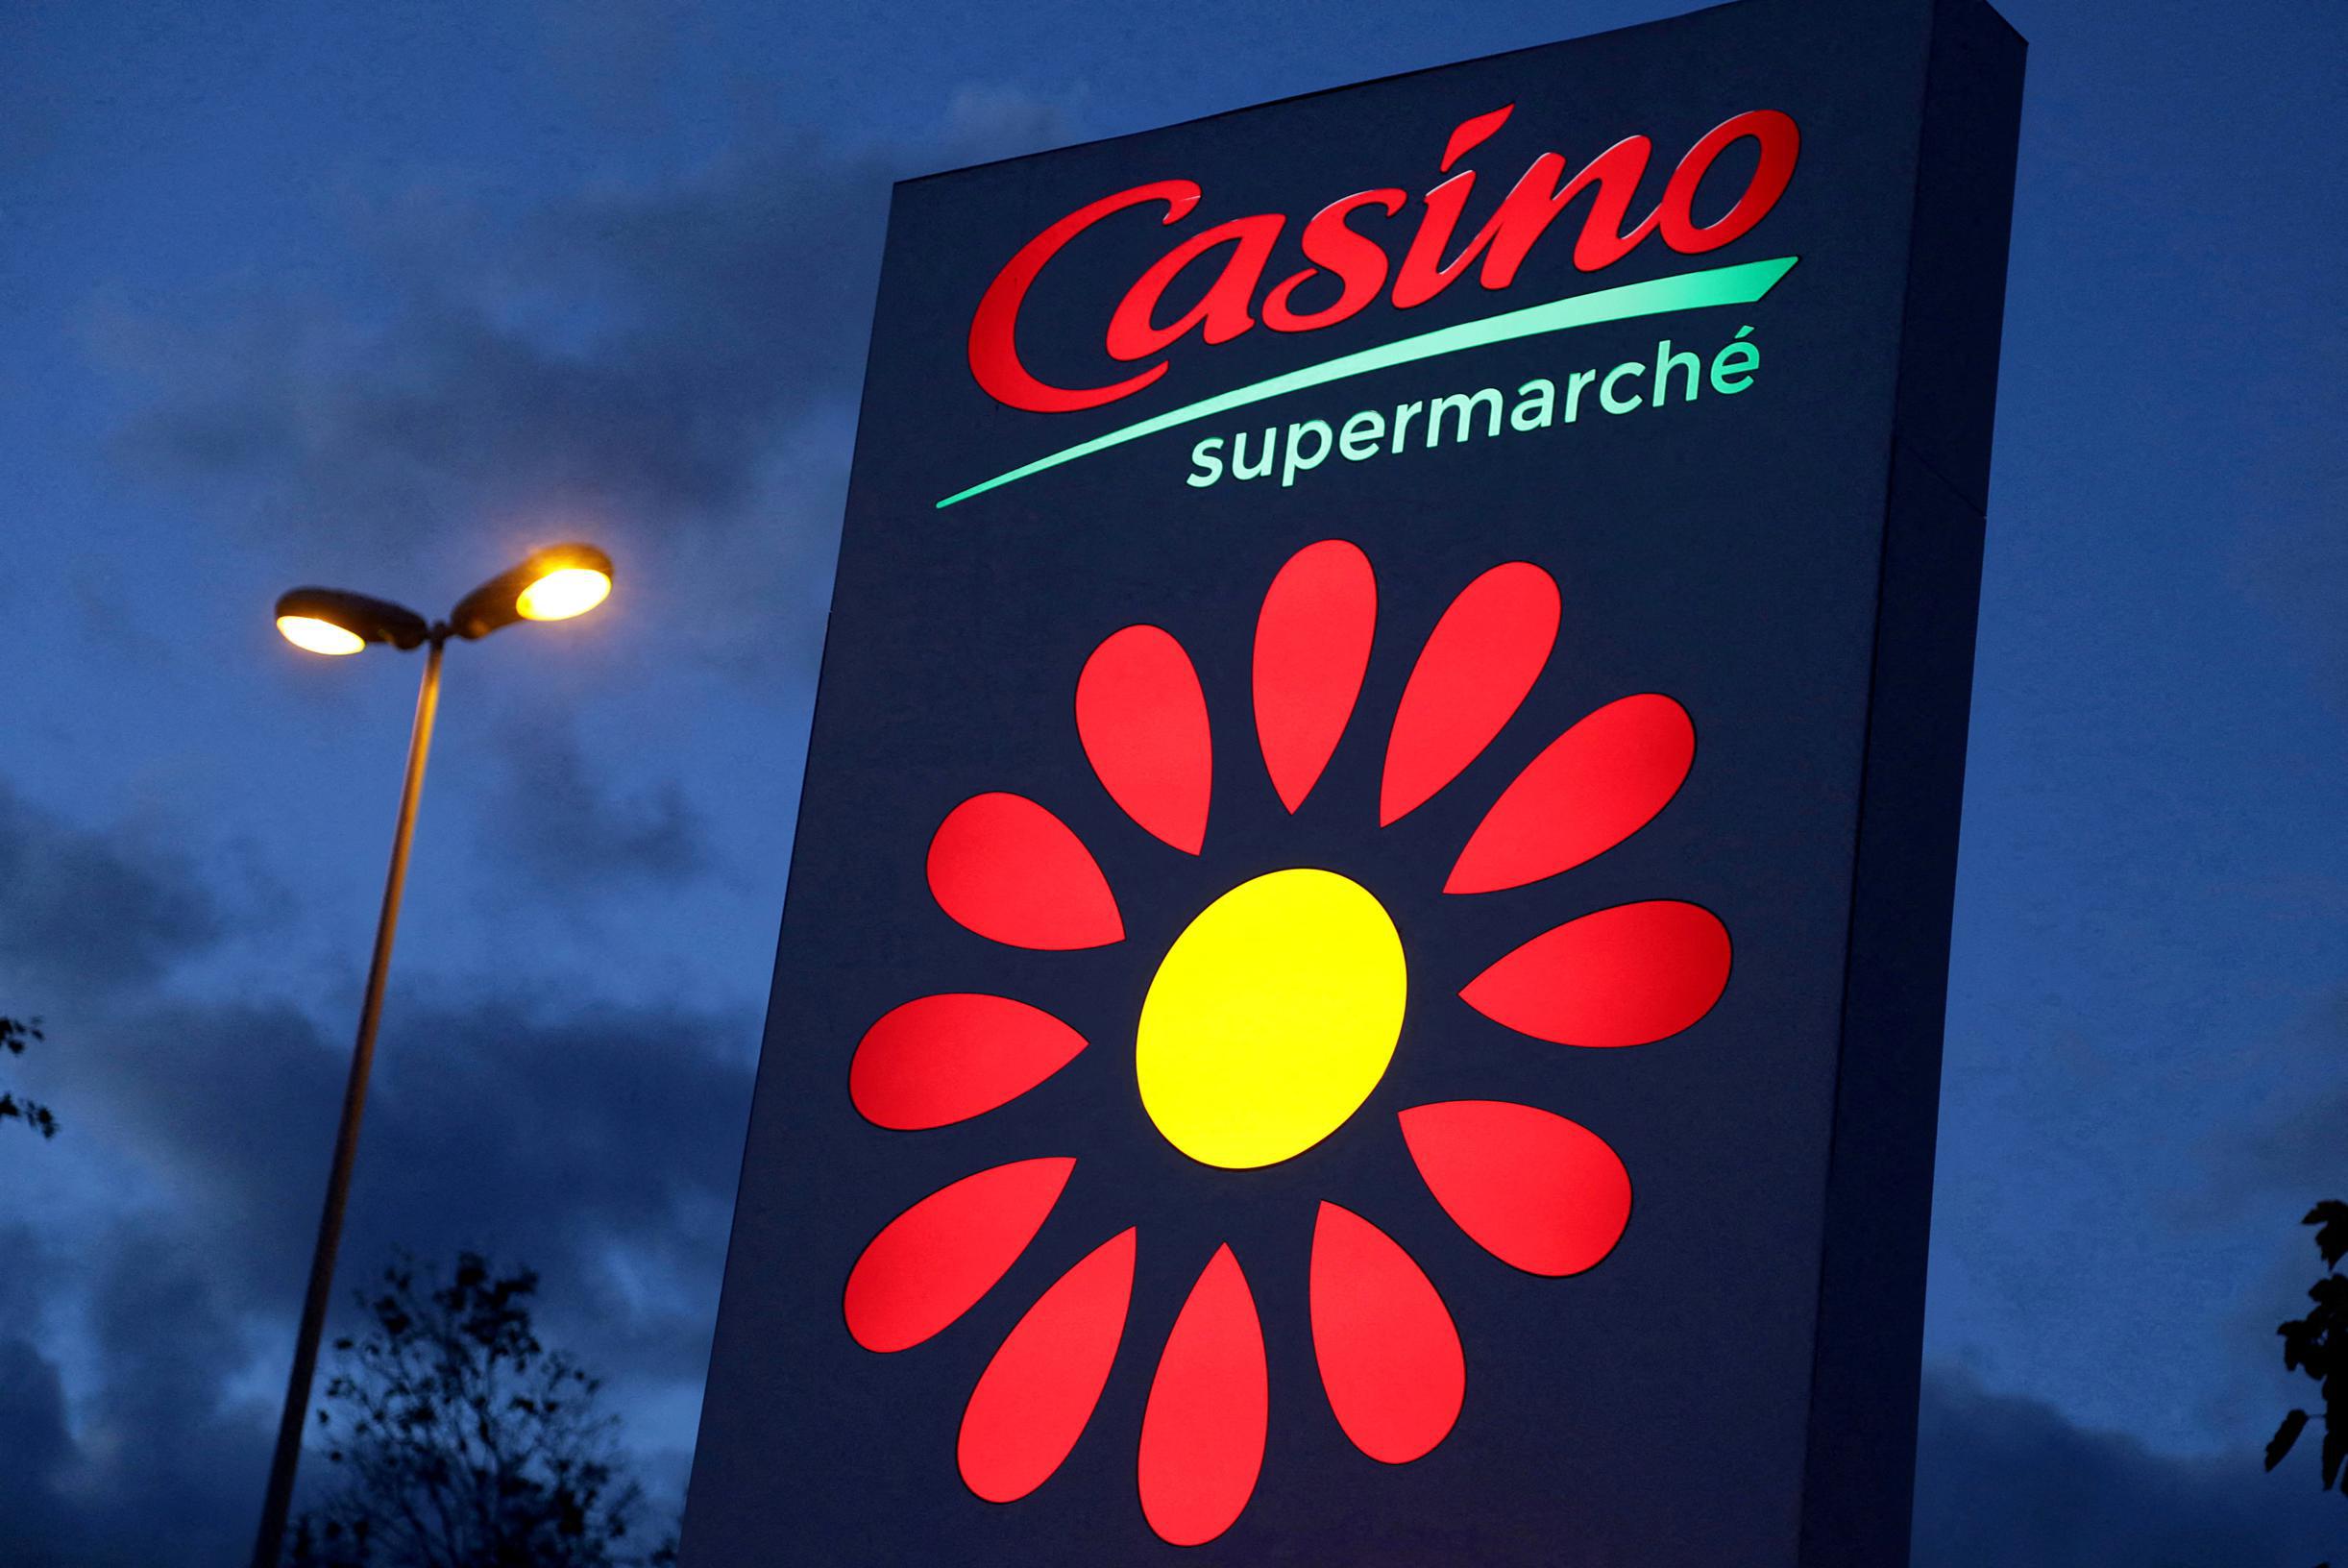 Franse supermarktketen Casino verkoopt groot aantal winkels na financiële problemen